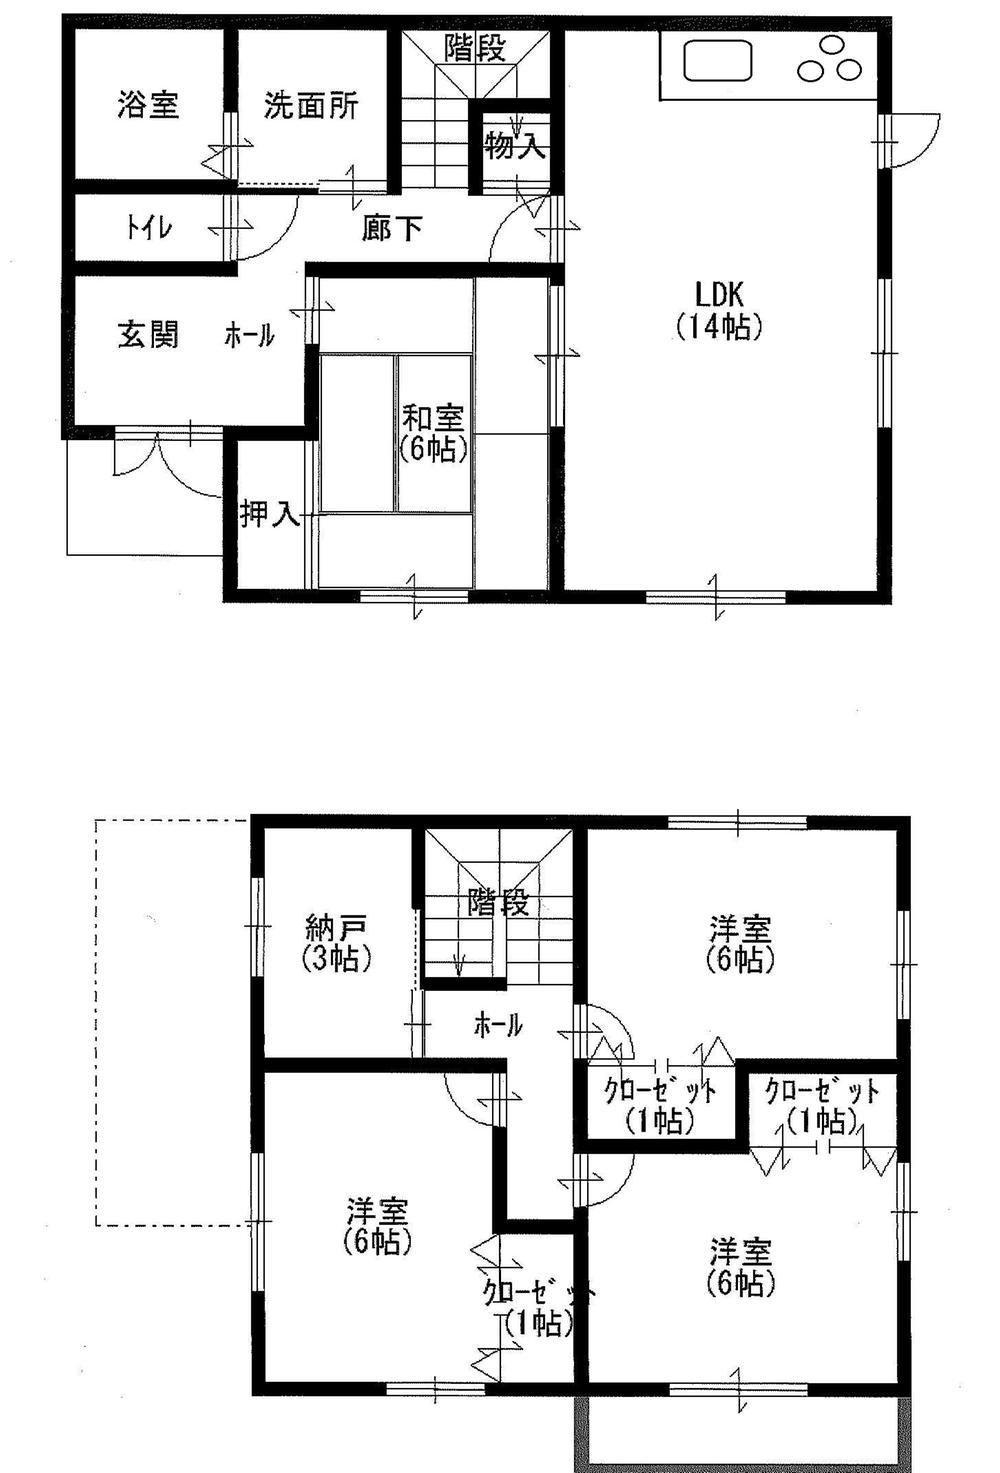 Floor plan. 24,900,000 yen, 4LDK + S (storeroom), Land area 150.24 sq m , Building area 101.02 sq m